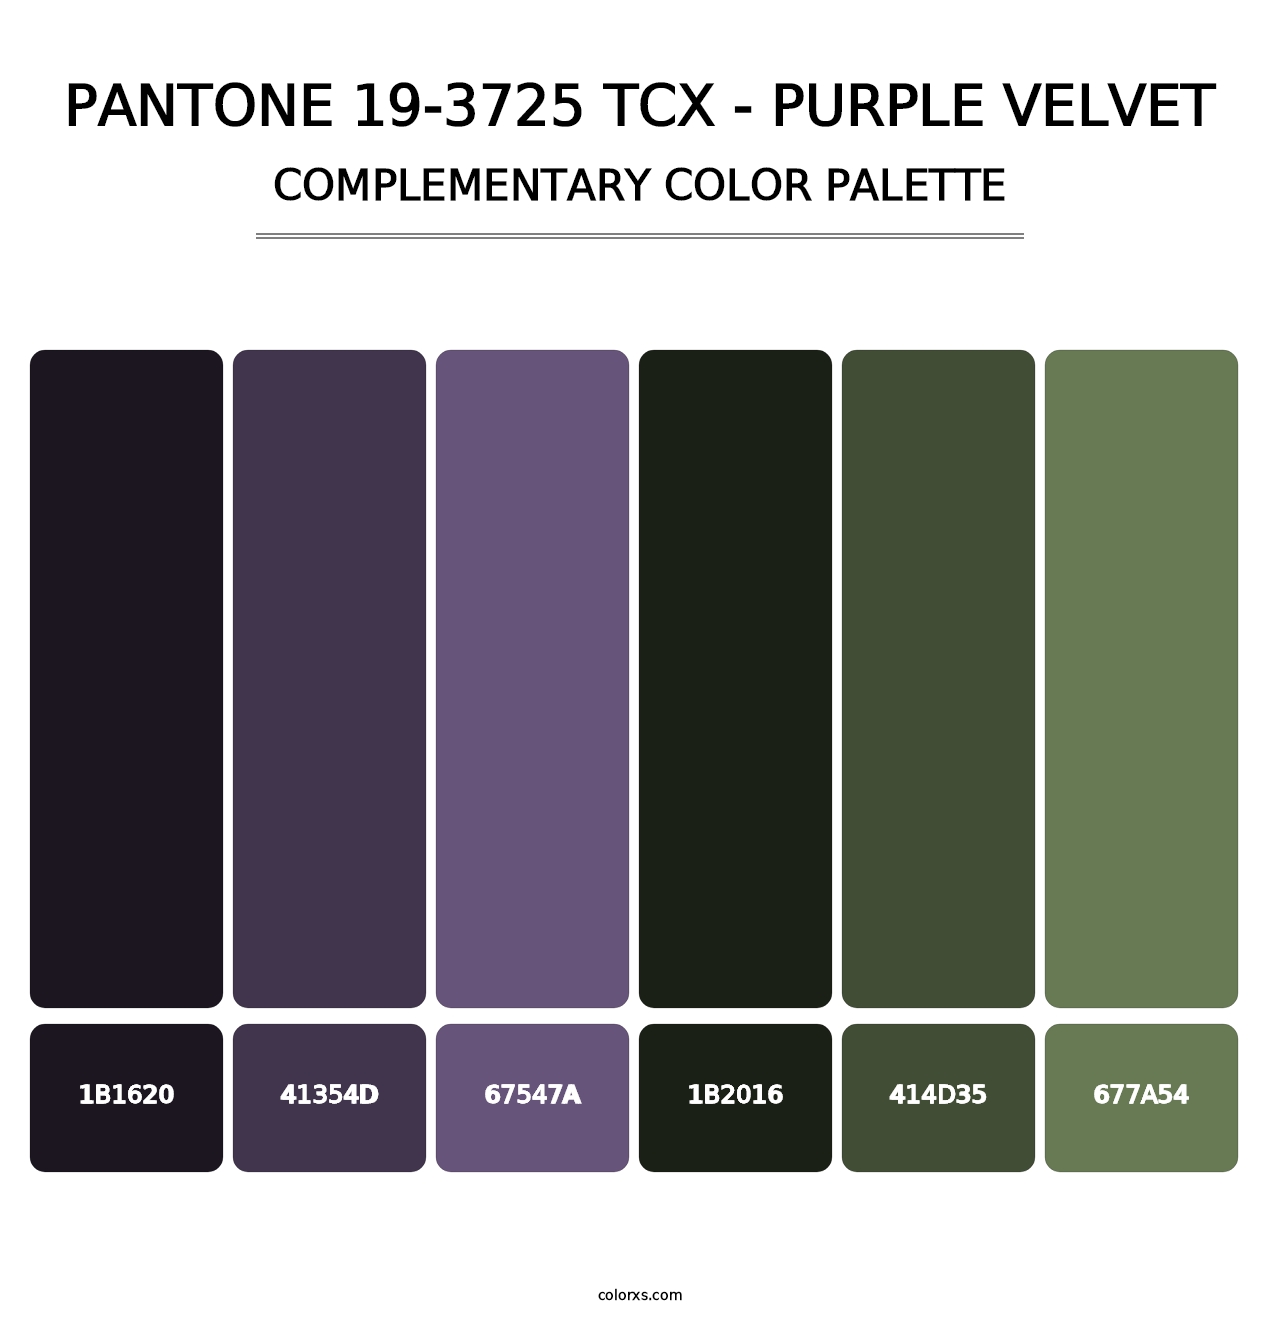 PANTONE 19-3725 TCX - Purple Velvet - Complementary Color Palette